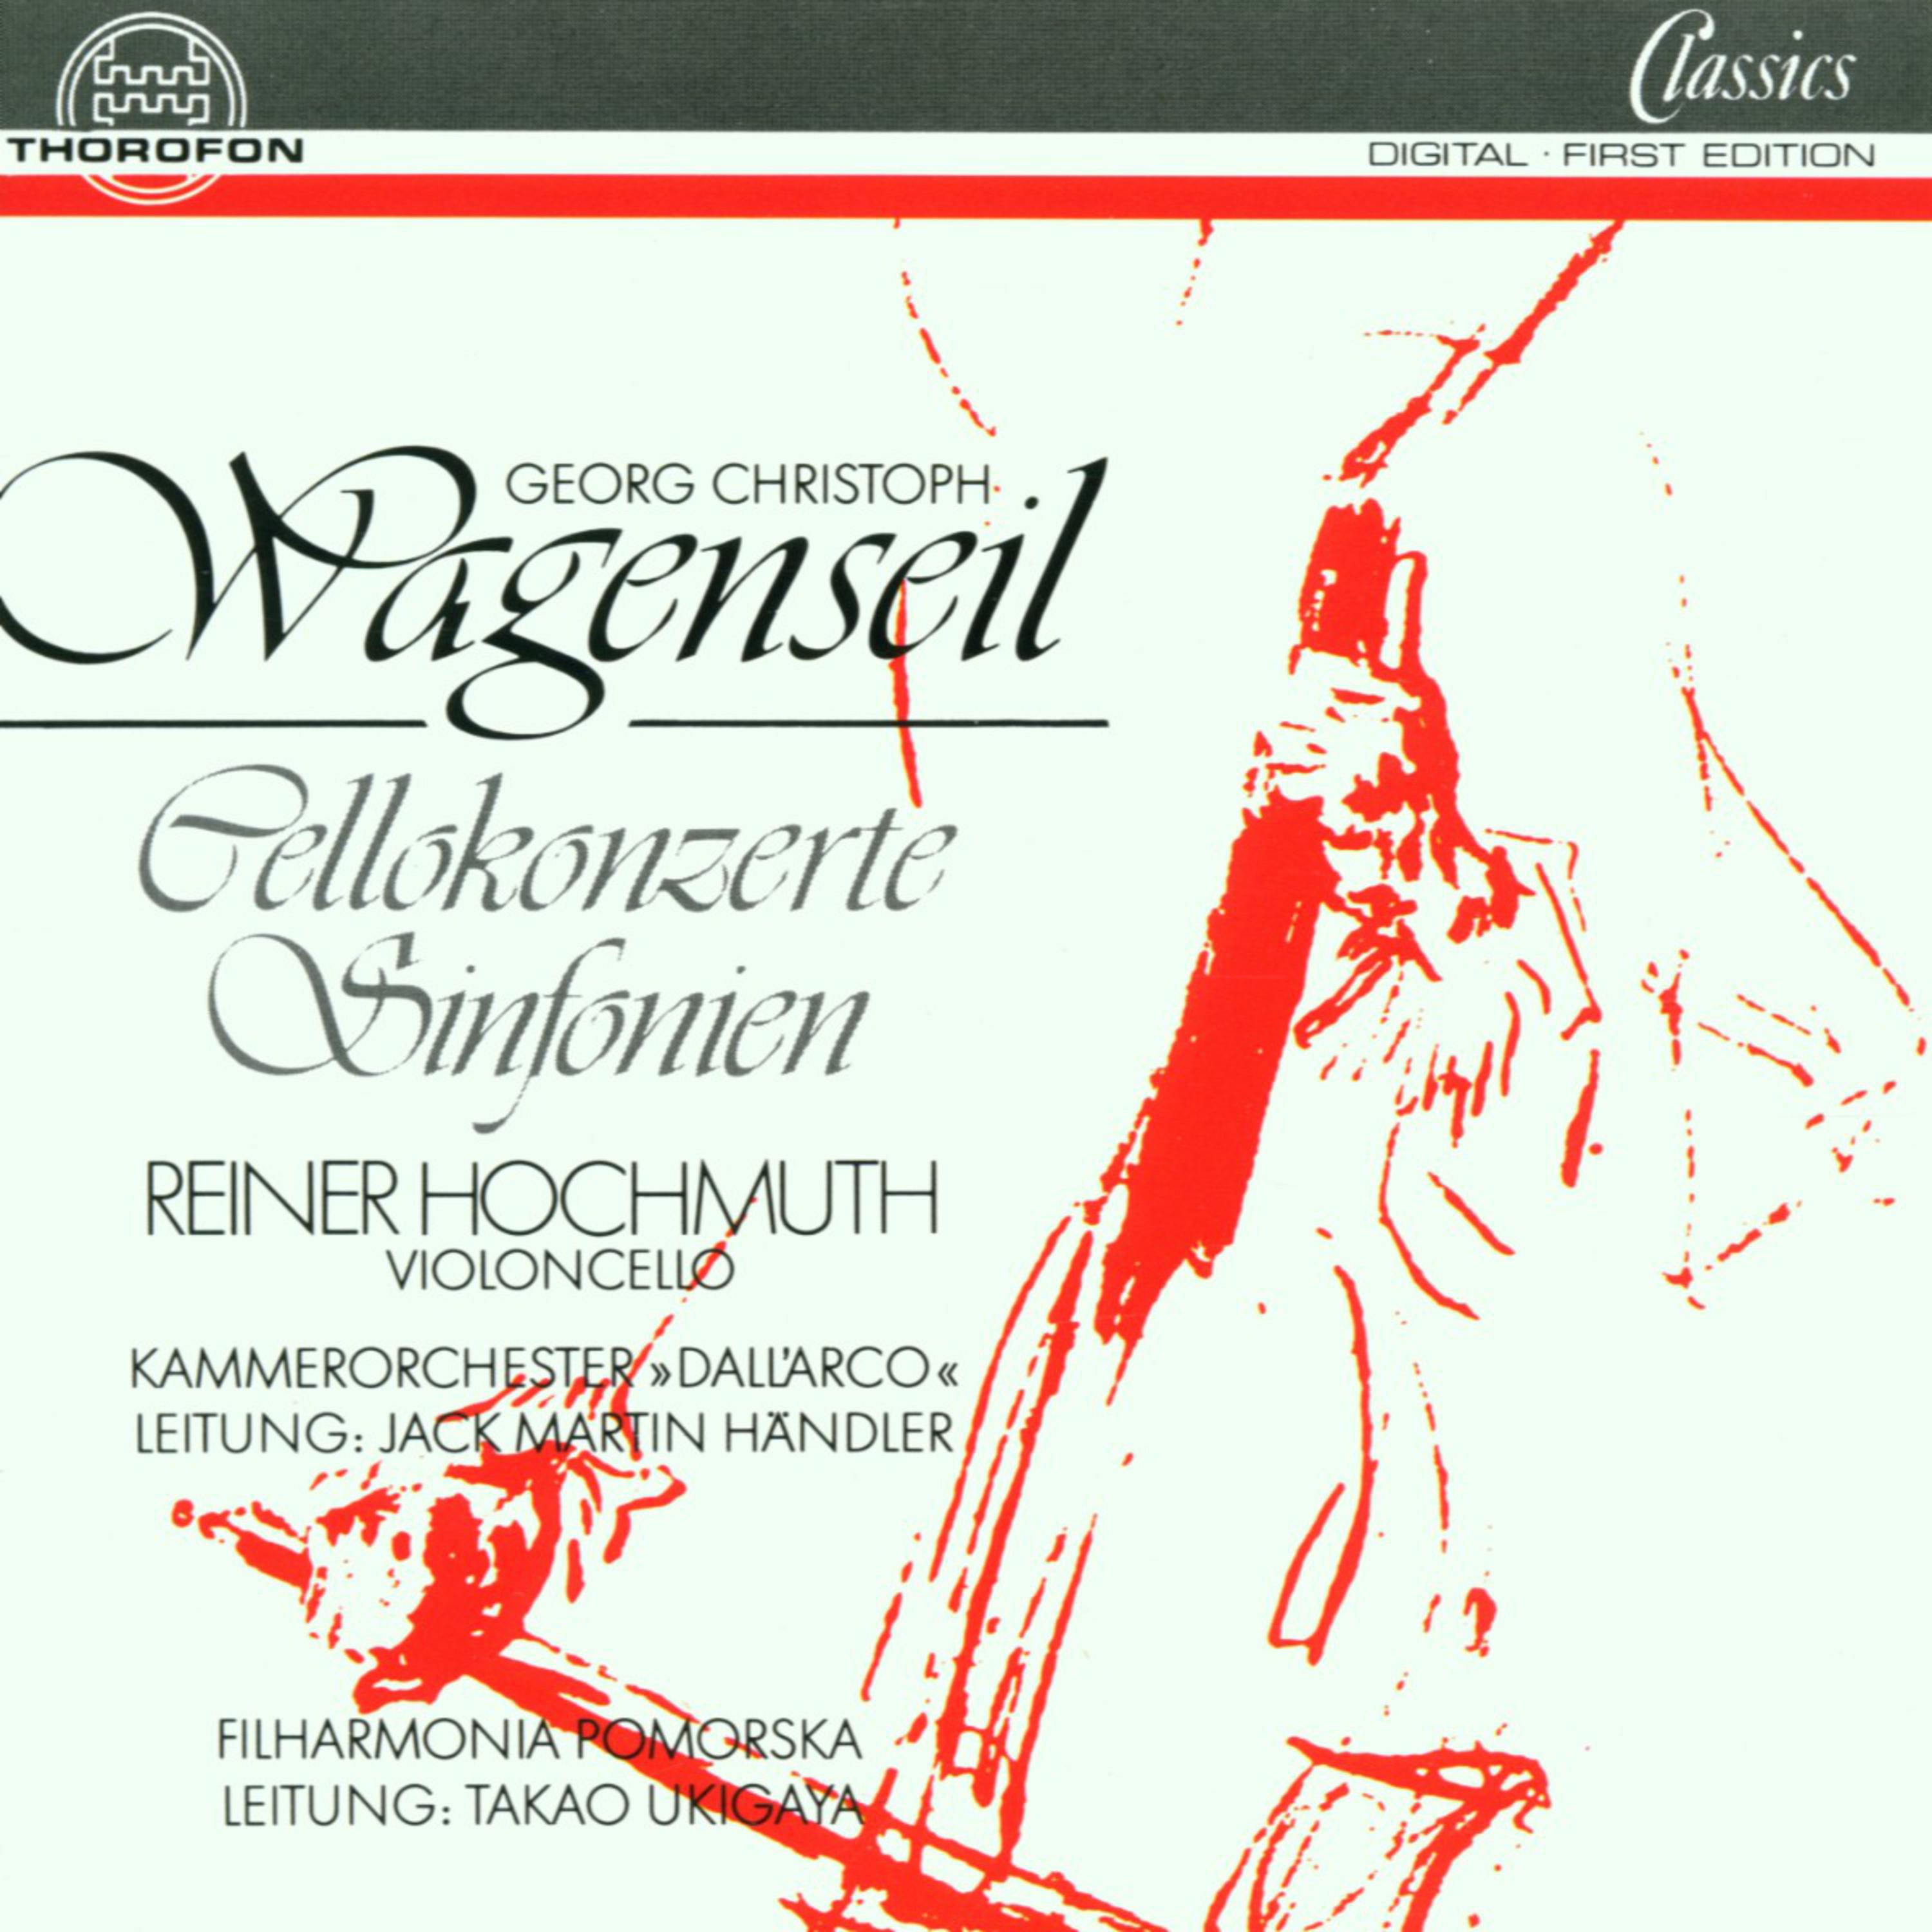 Georg Christoph Wagenseil: Cellokonzerte, Sinfonien